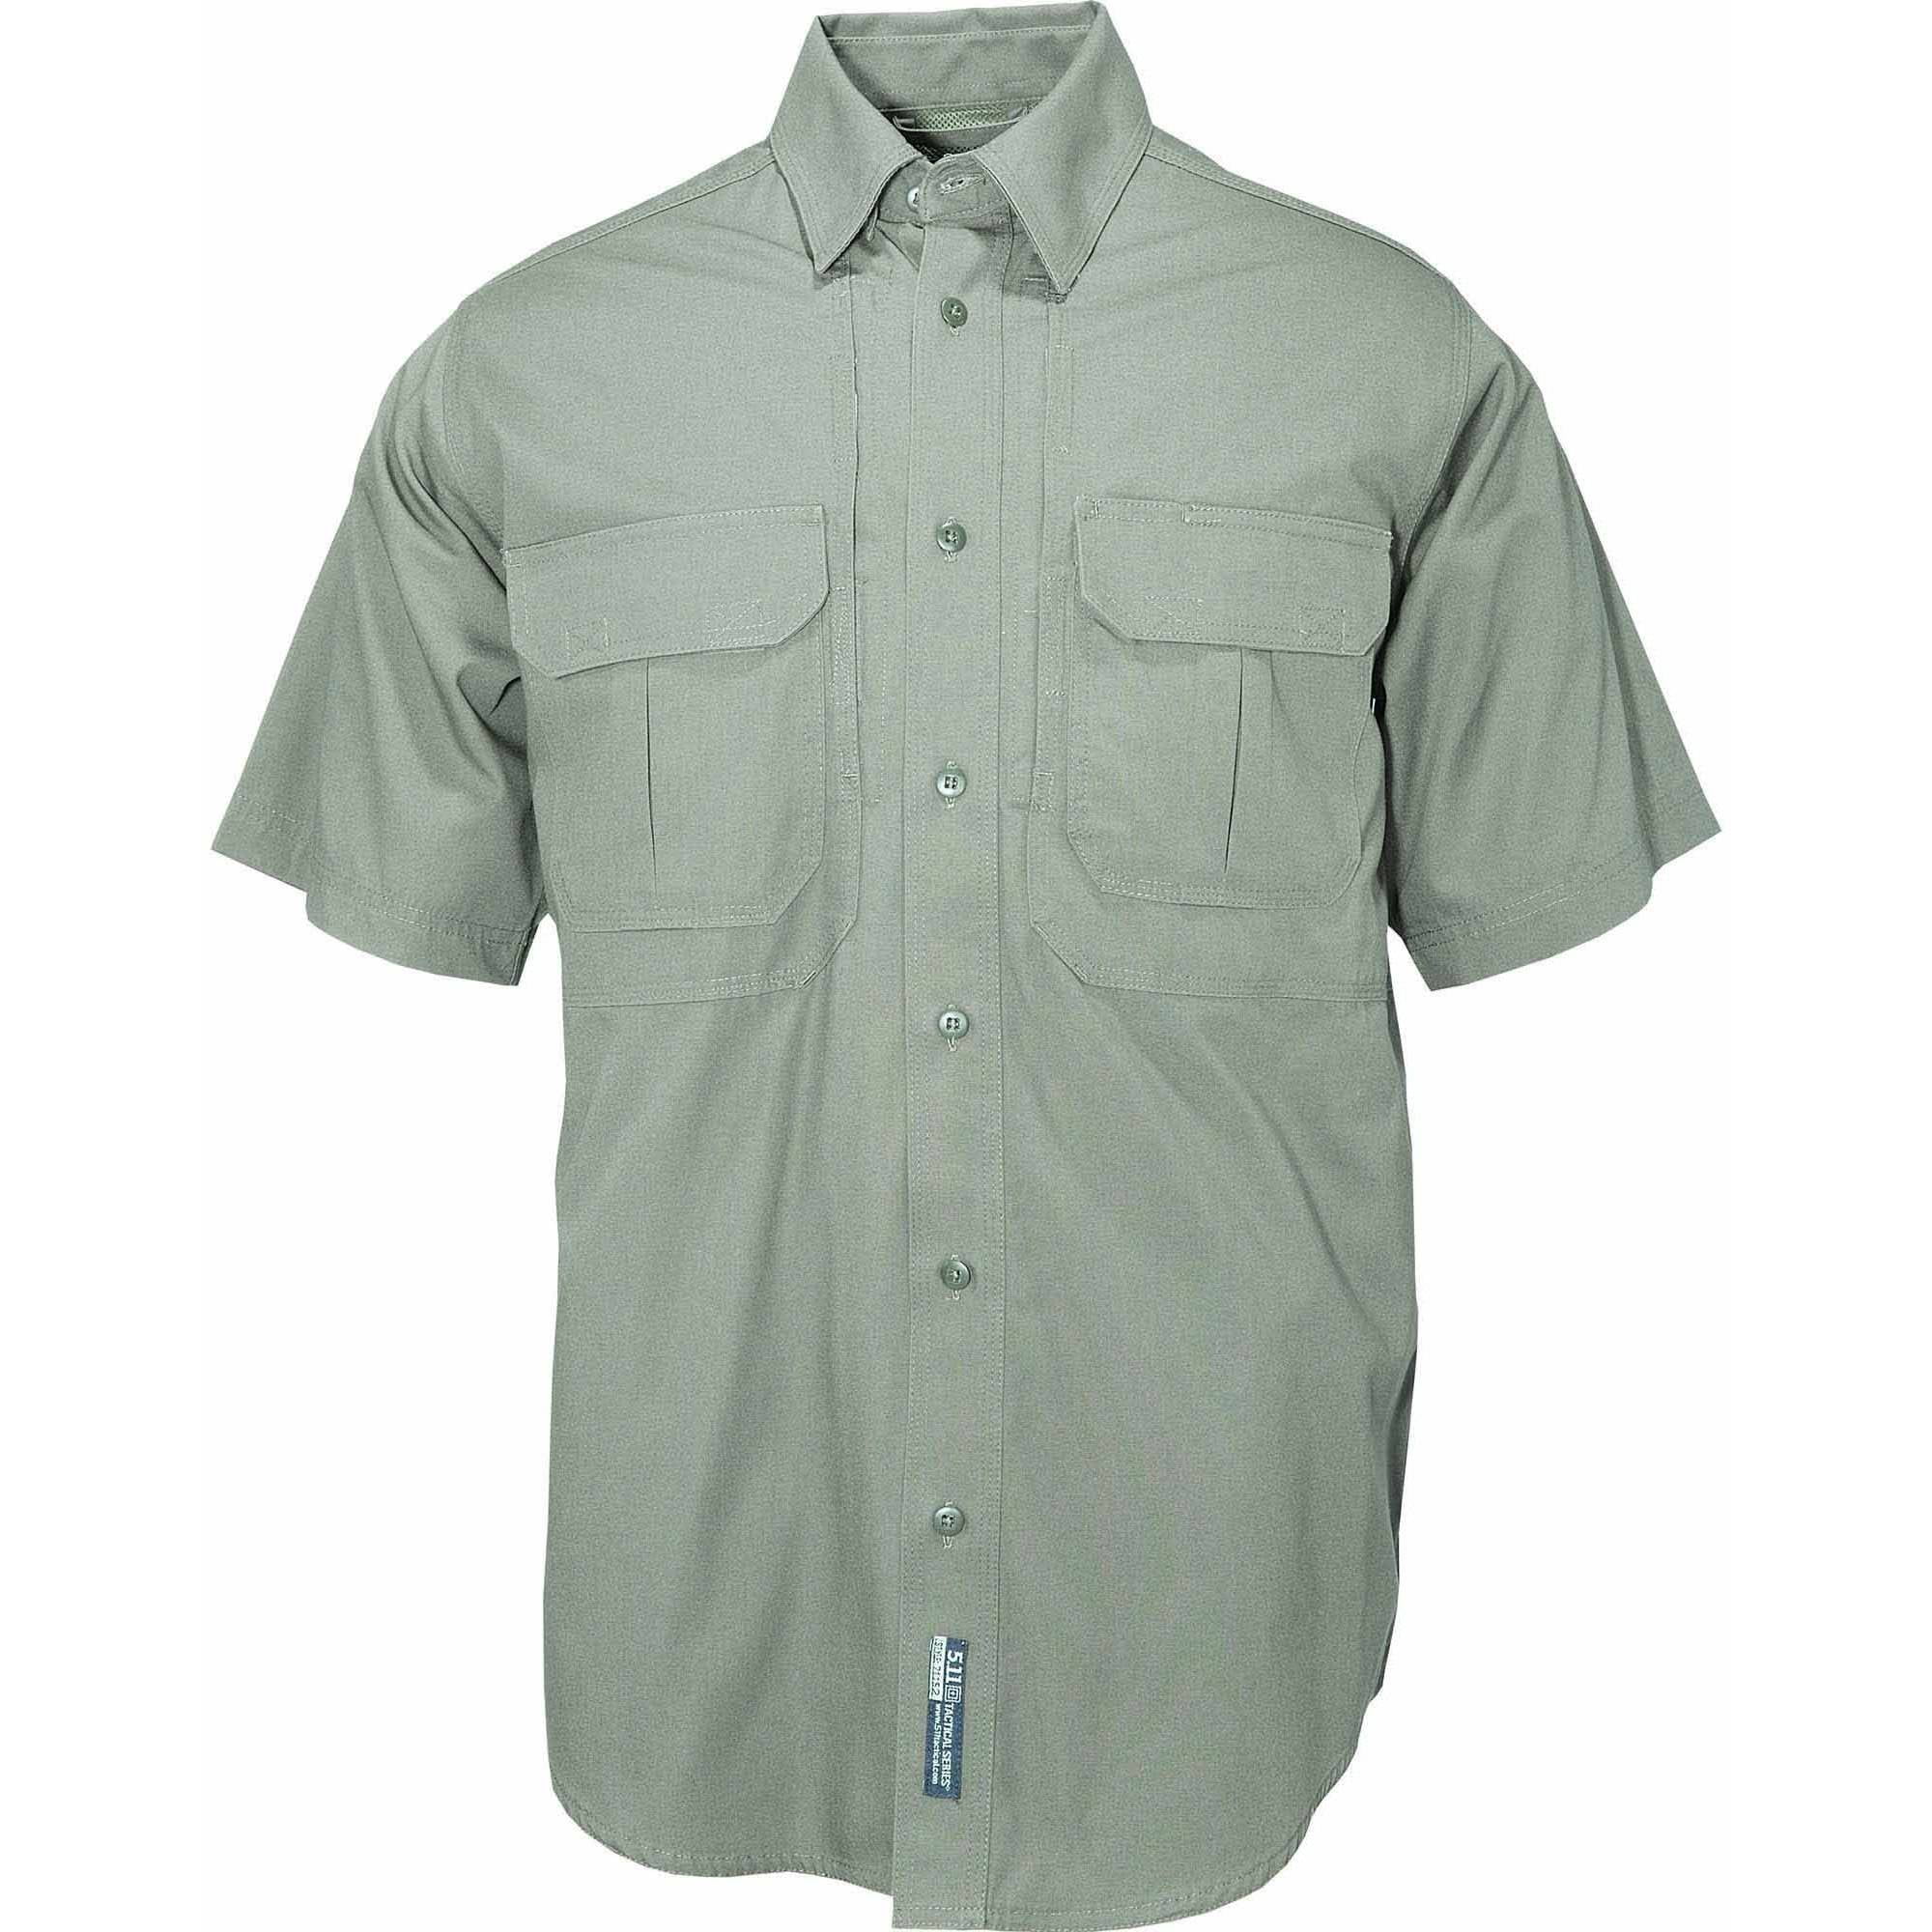 Short Sleeve Cotton Tactical Shirt, OD Green - Walmart.com